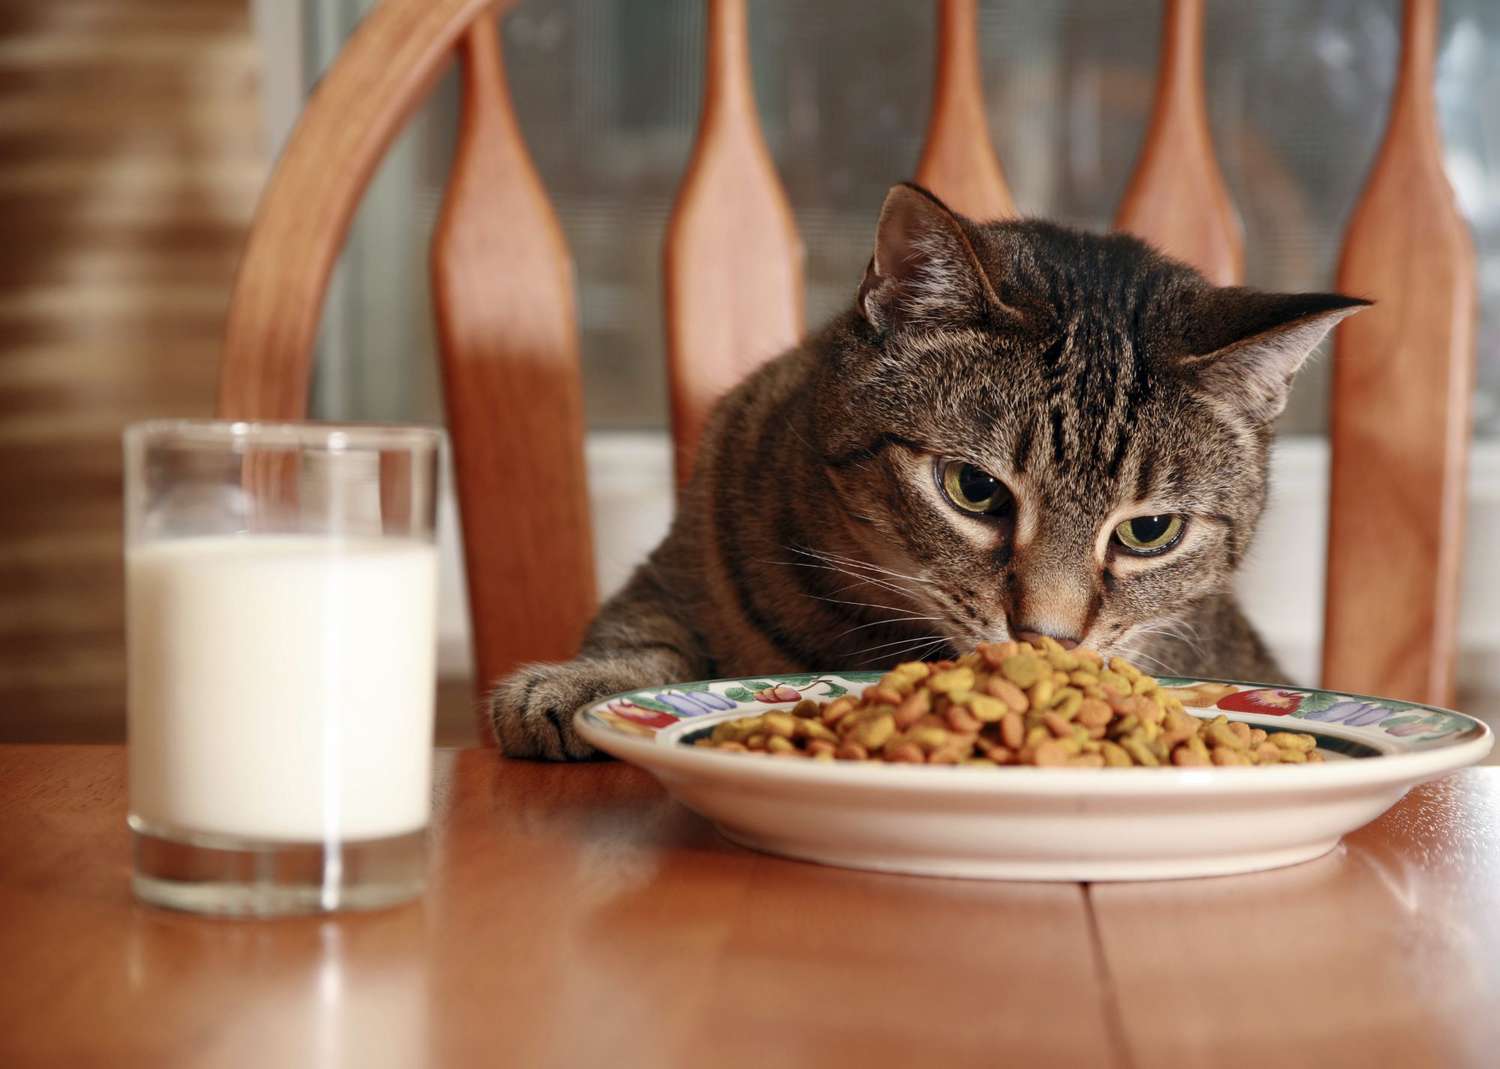 Ao contrário de outros animais de estimação, os gatos preferem receber refeições gratuitas em vez de trabalhar para sua comida, estudo descobriu